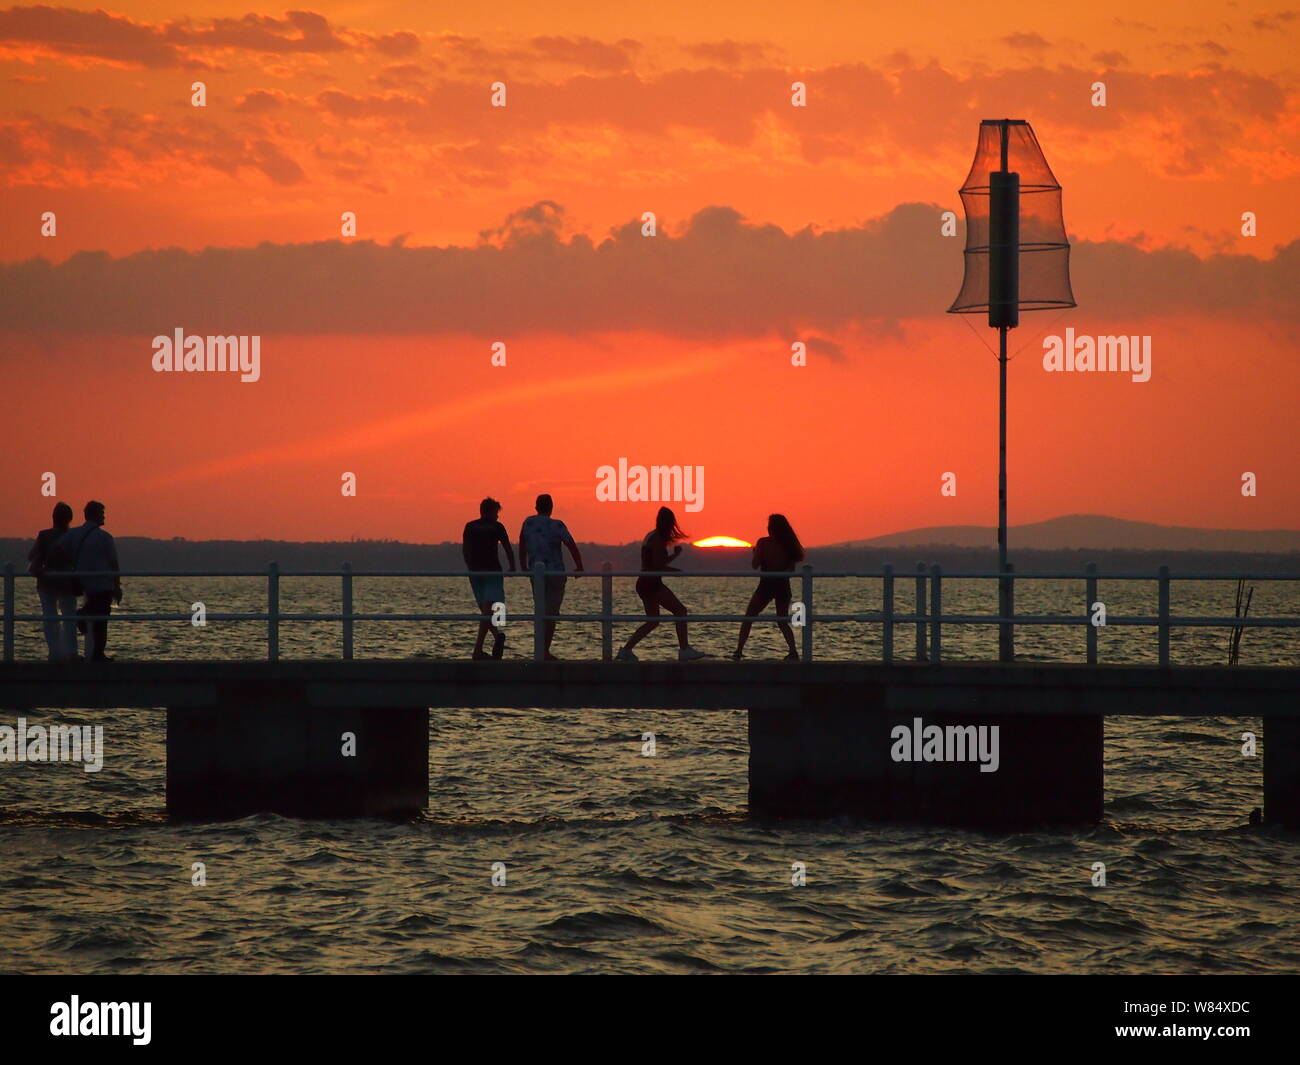 Personnes sur un quai silhouetted against orange ciel au coucher du soleil Banque D'Images